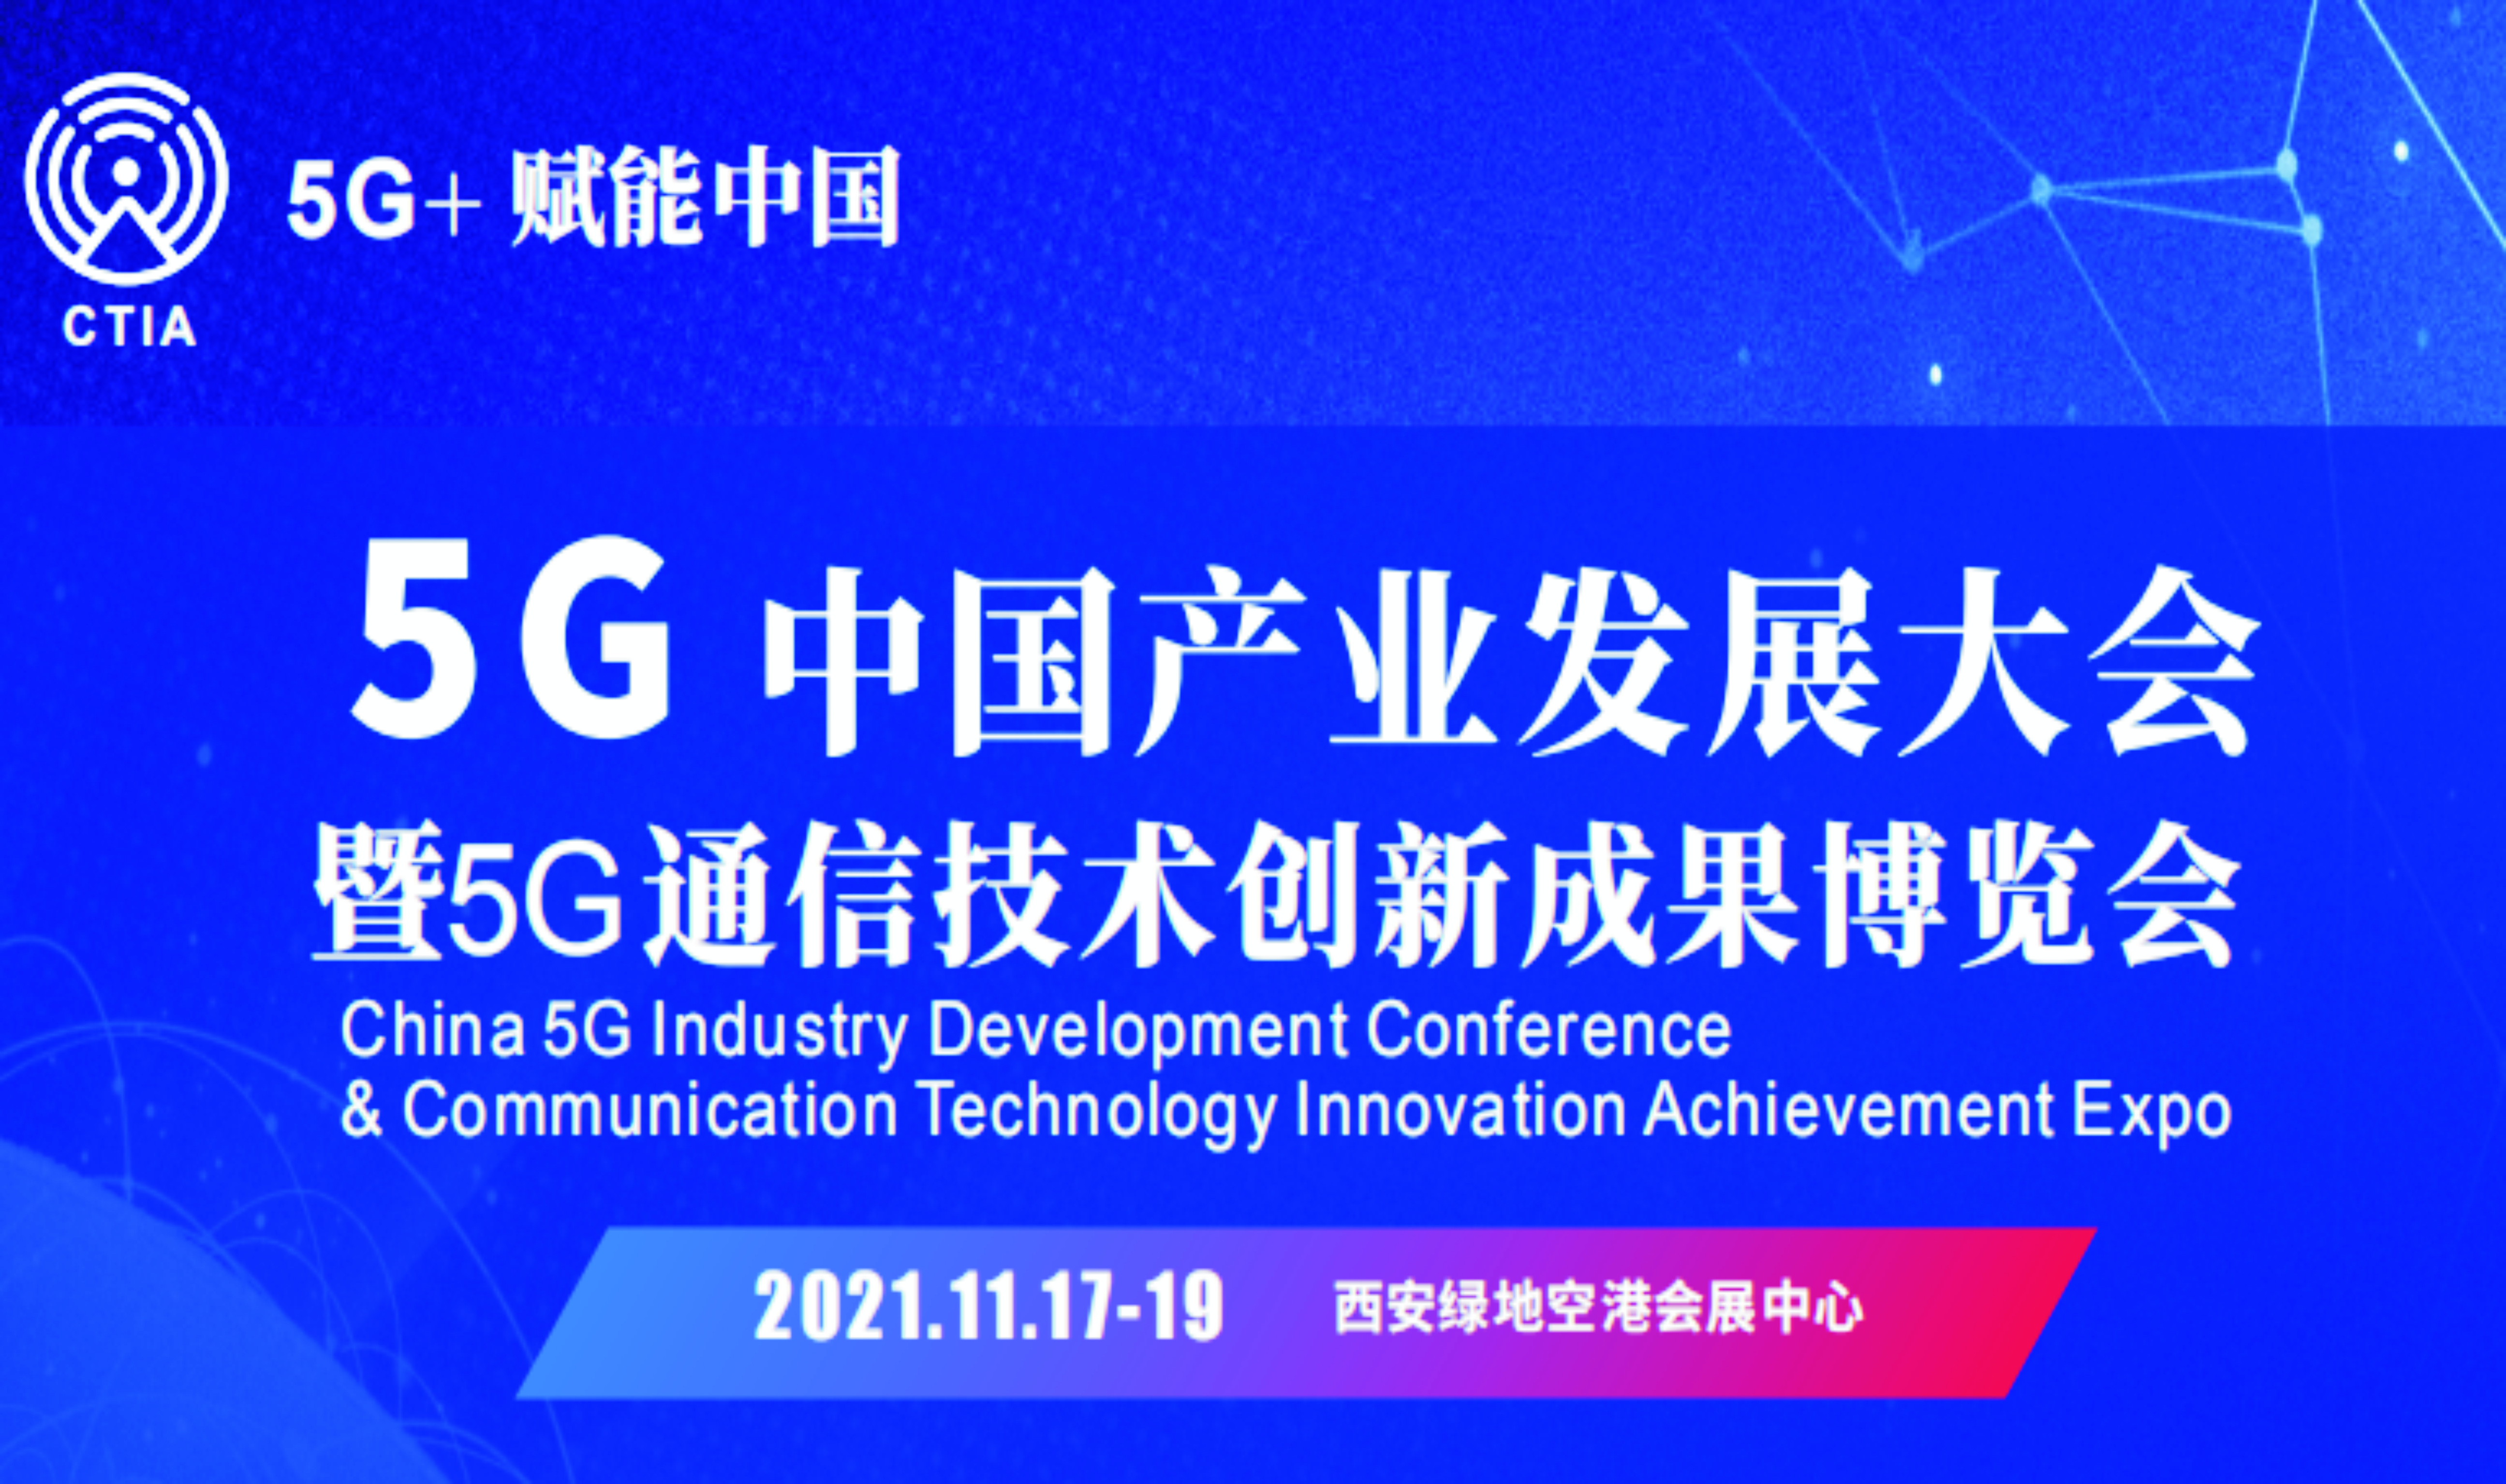 5G中国产业发展大会暨5G通信技术创新成果博览会